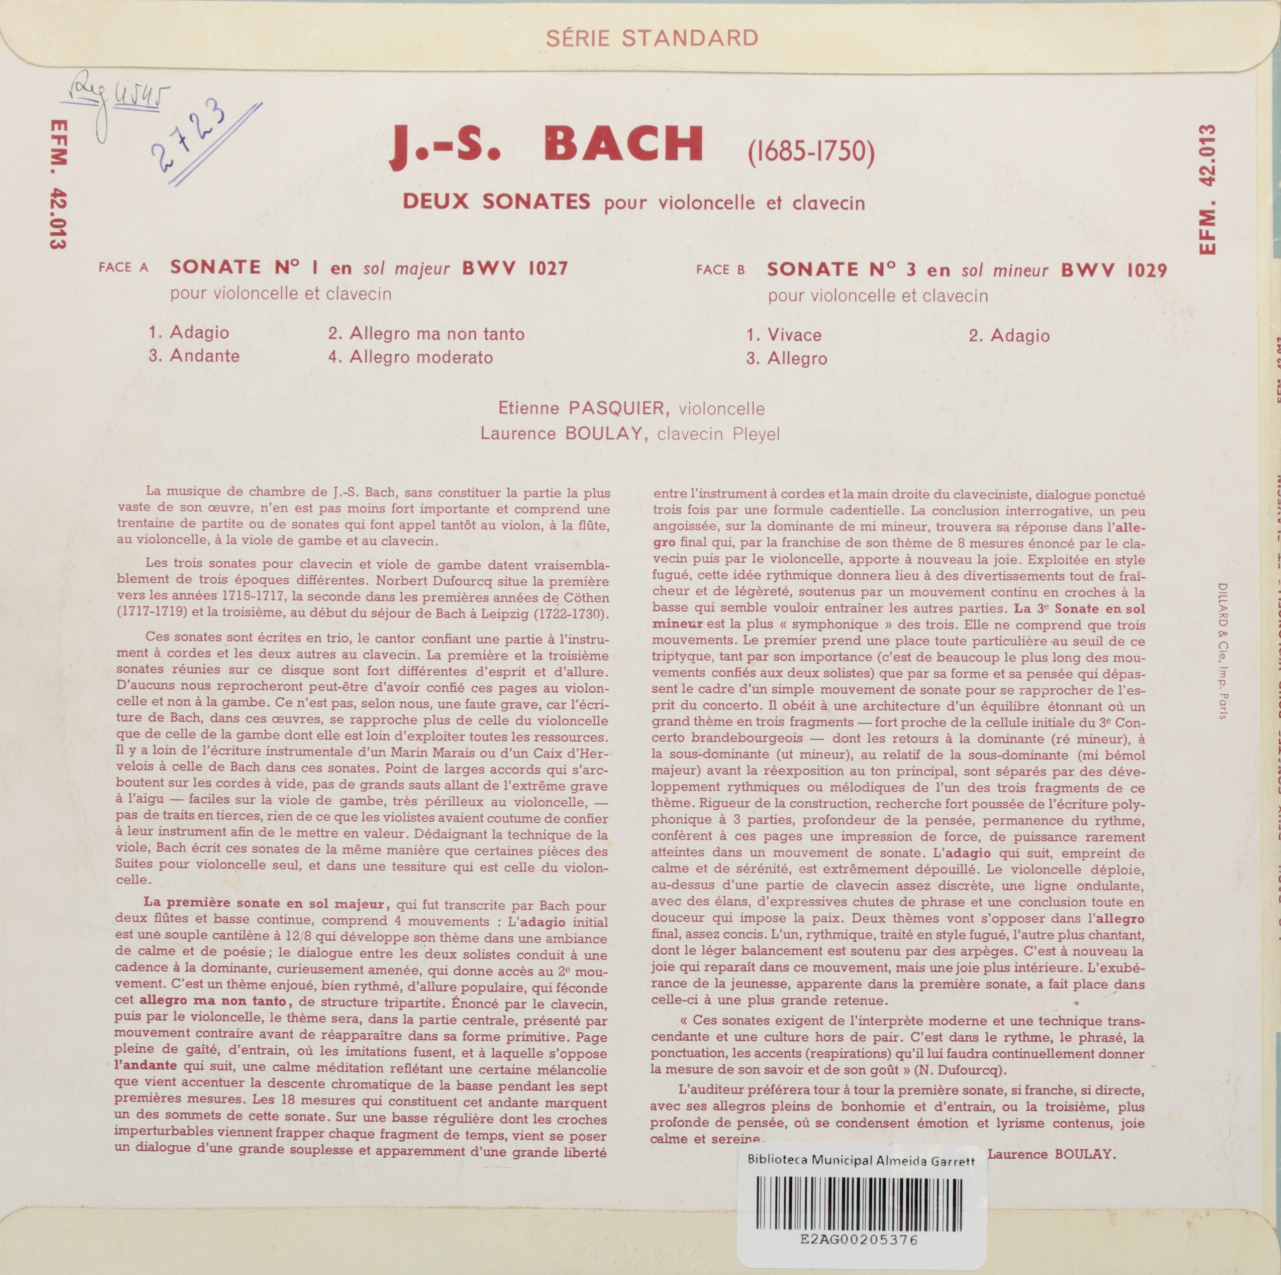 Bach: Deux sonates pour violoncelle et clavecin